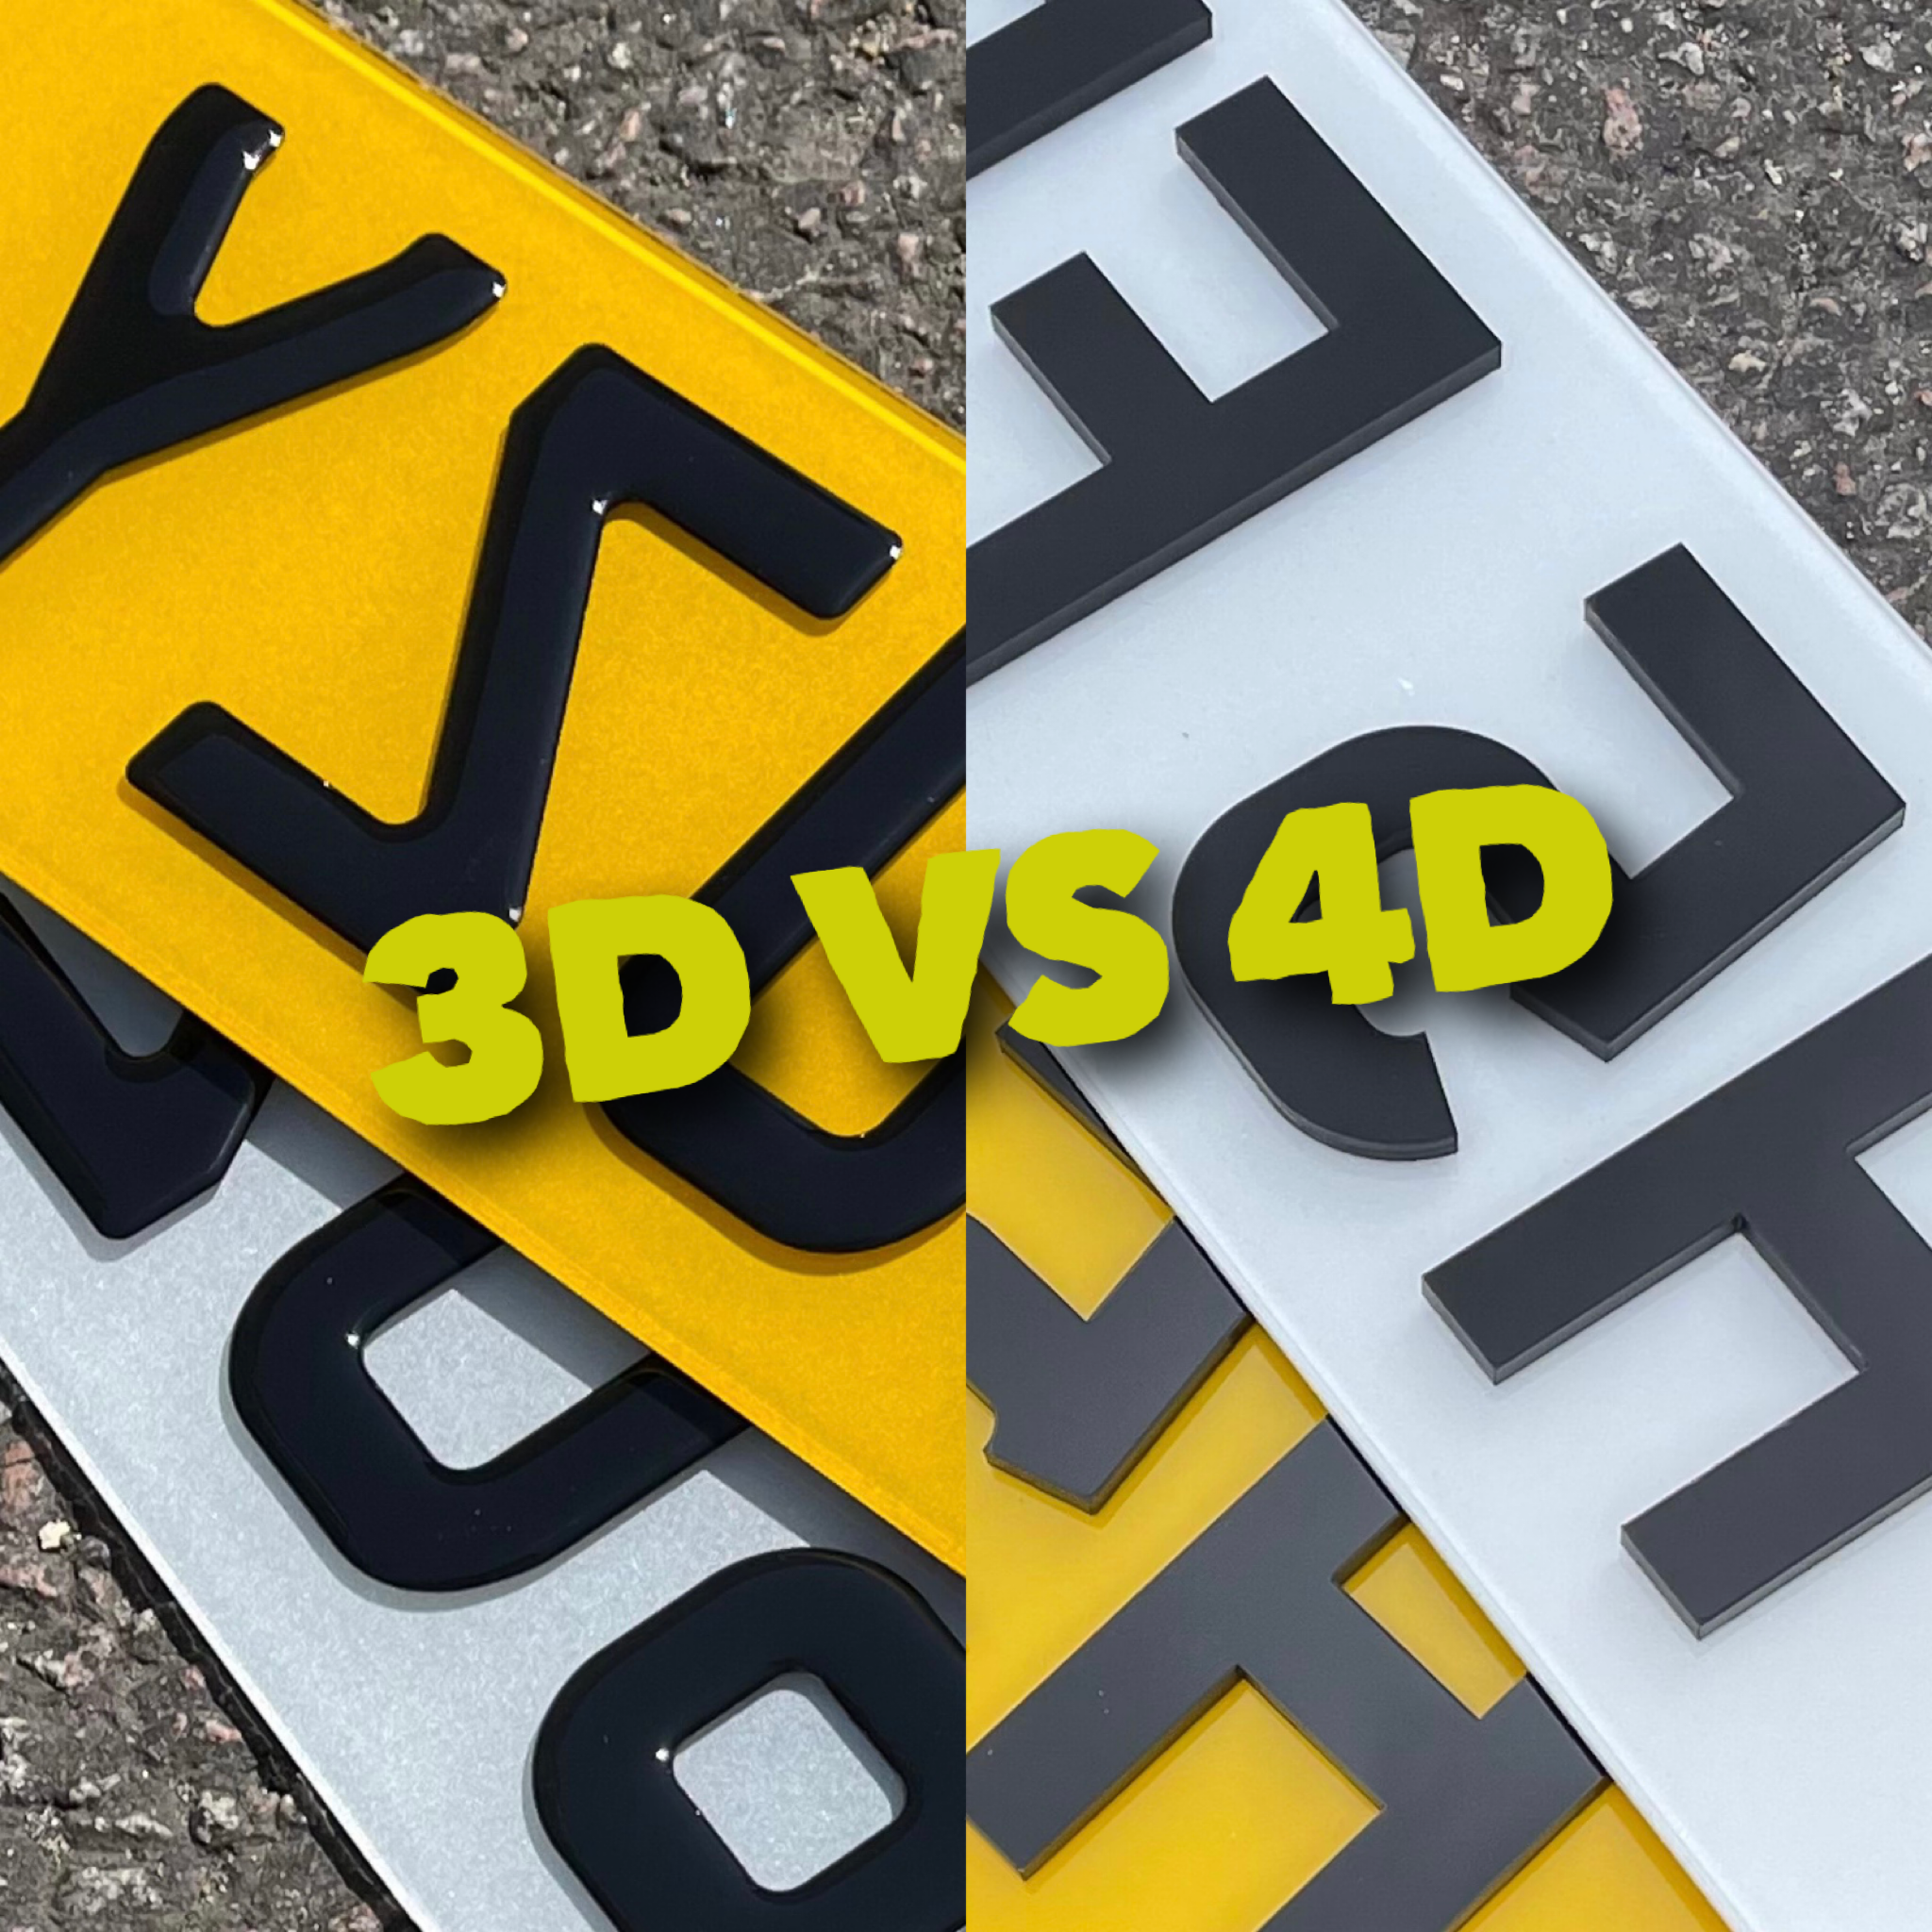 3D VS 4D PLATES